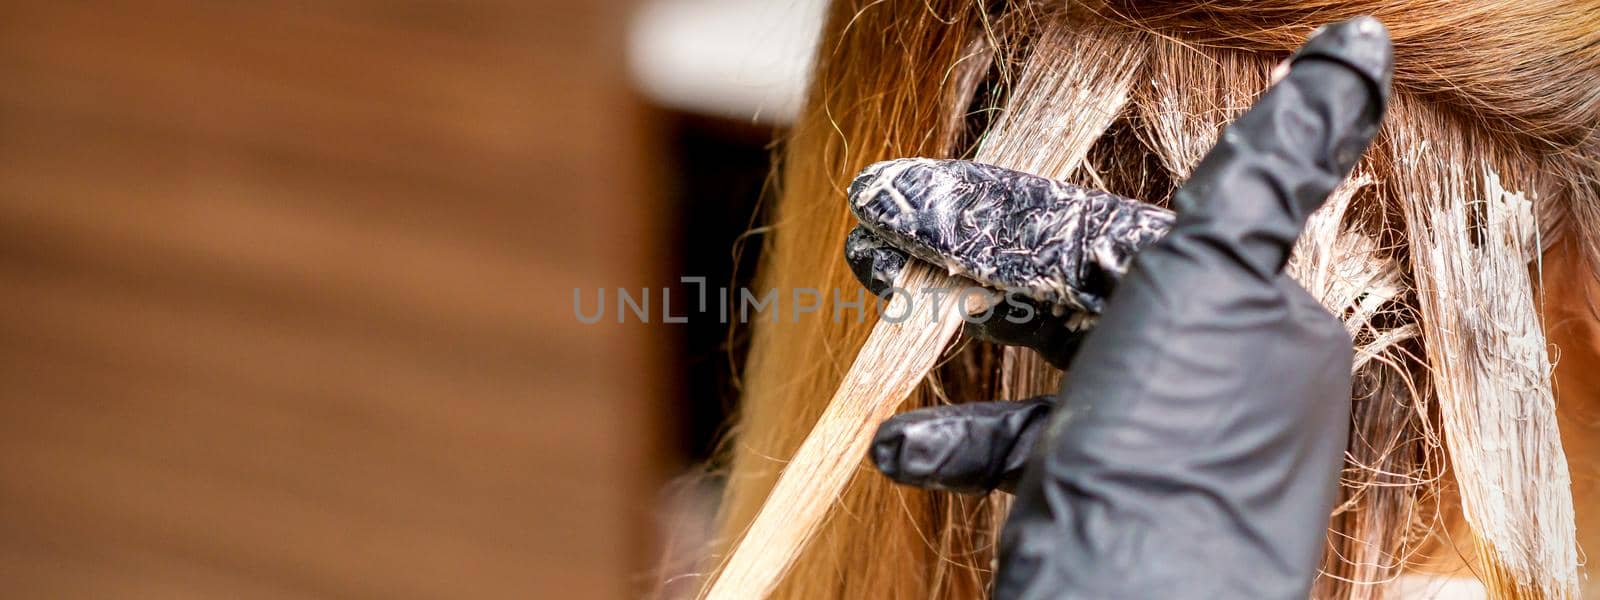 Hairdresser applying dye to strand of hair by okskukuruza